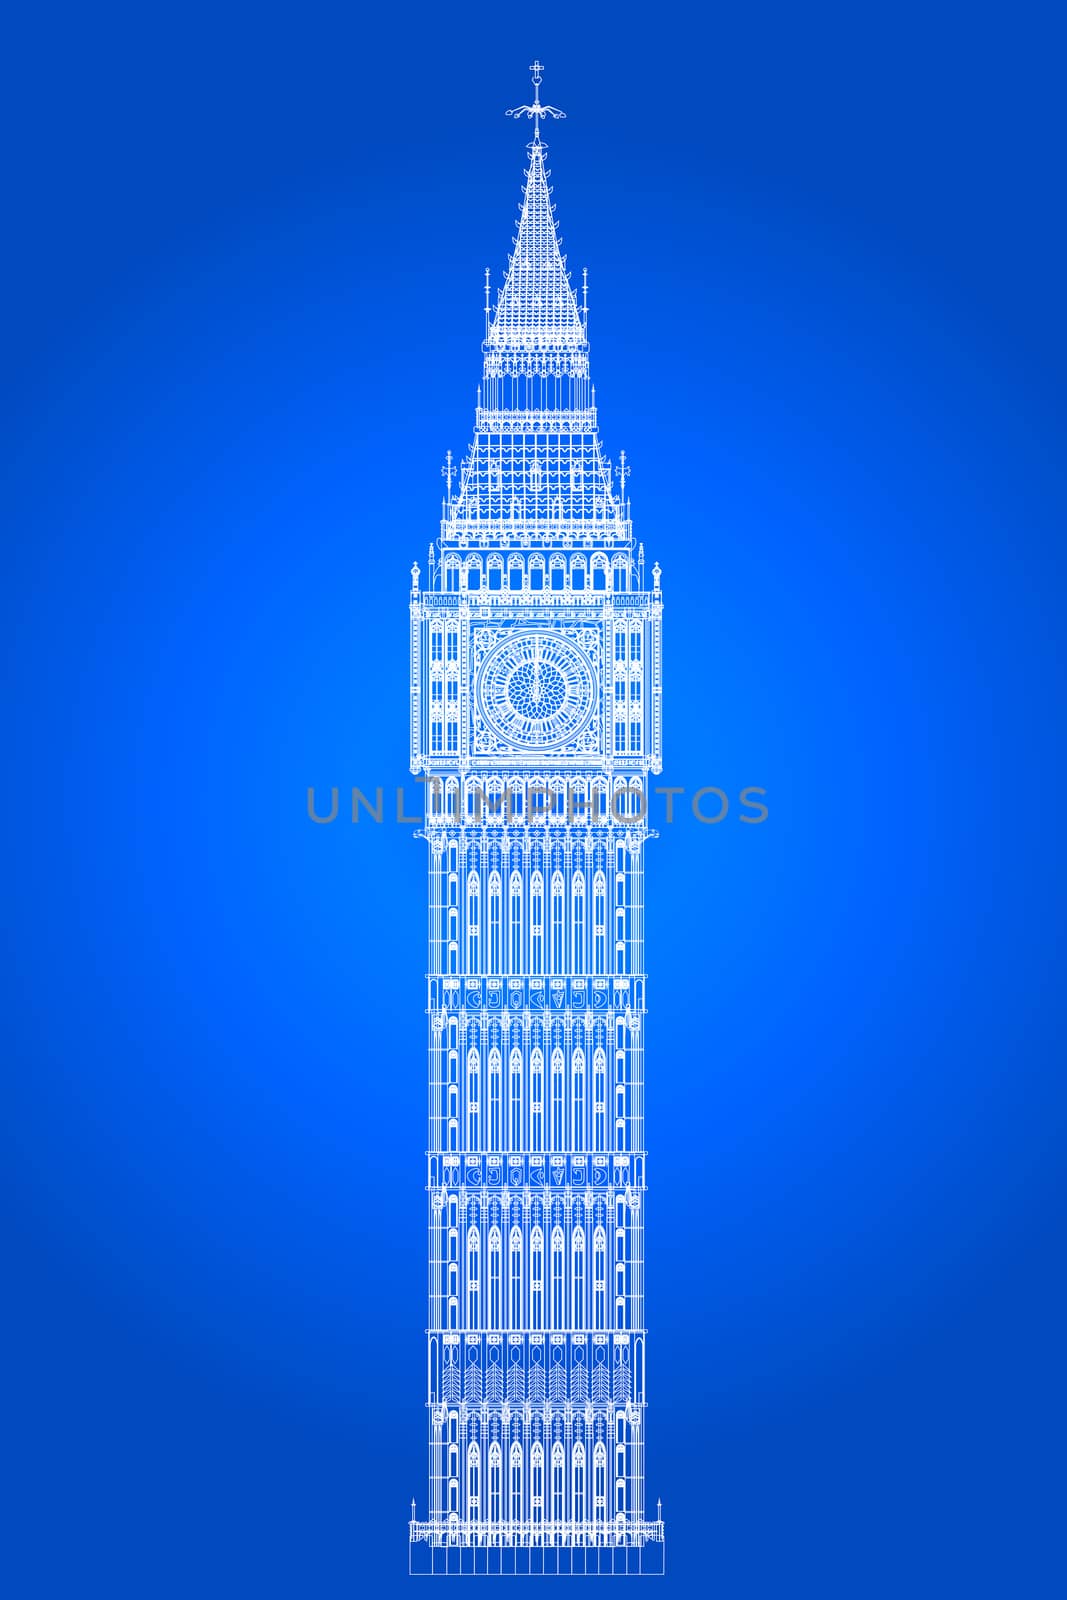 The London landmark Big Ben Clocktower as a blueprint